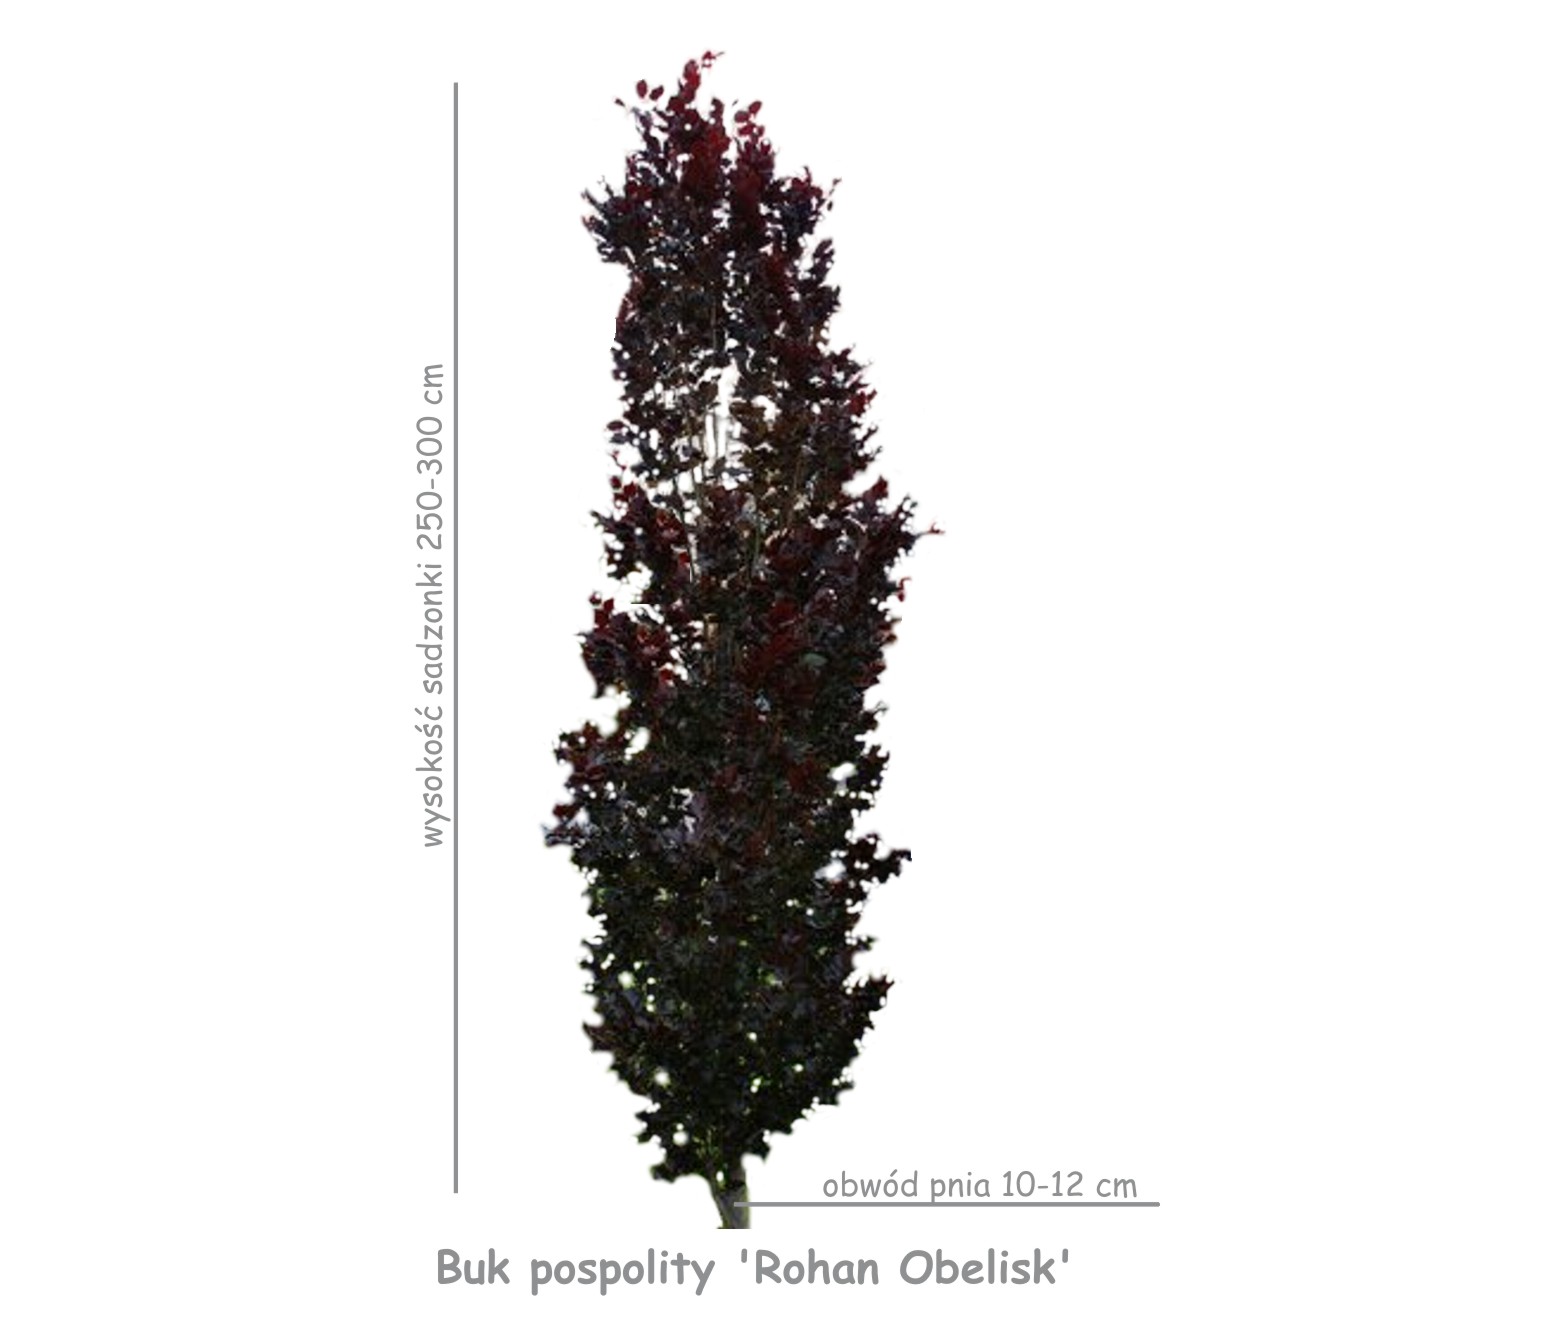 Buk pospolity 'Rohan Obelisk' sadzonka o obwodzie pnia 10-12 cm